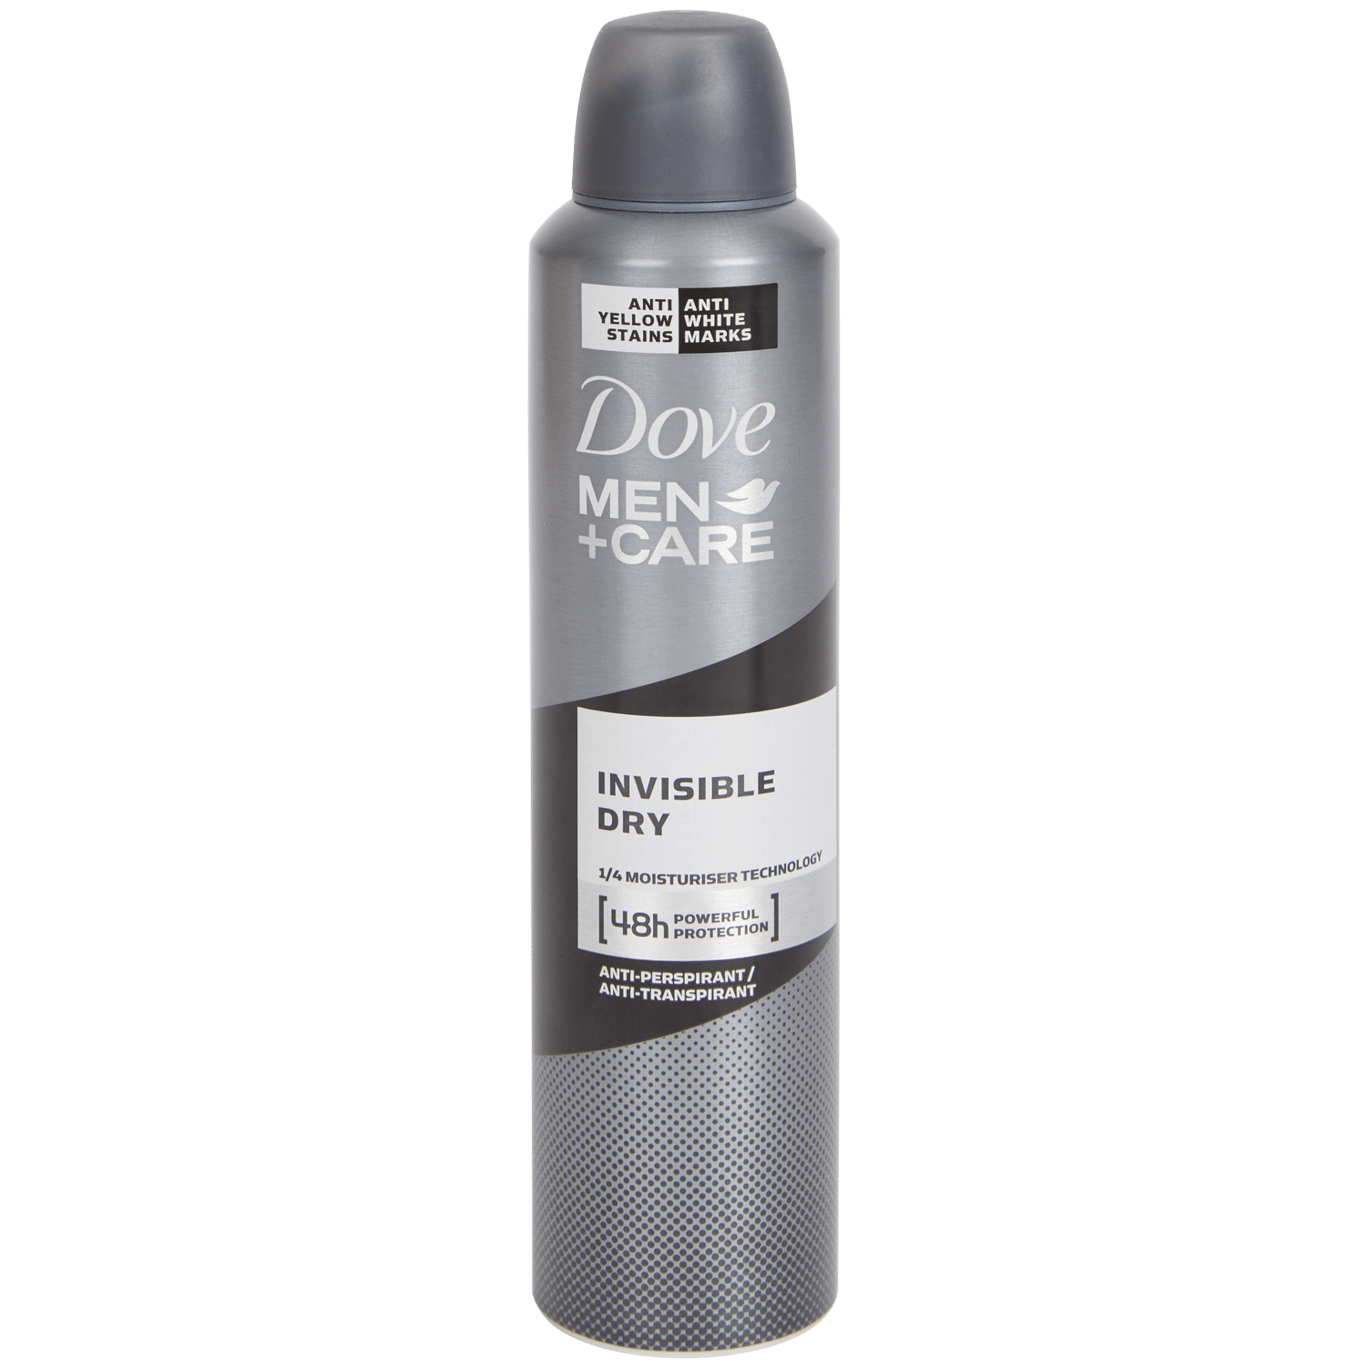 Dove Men+Care Deodorant Invisible Dry